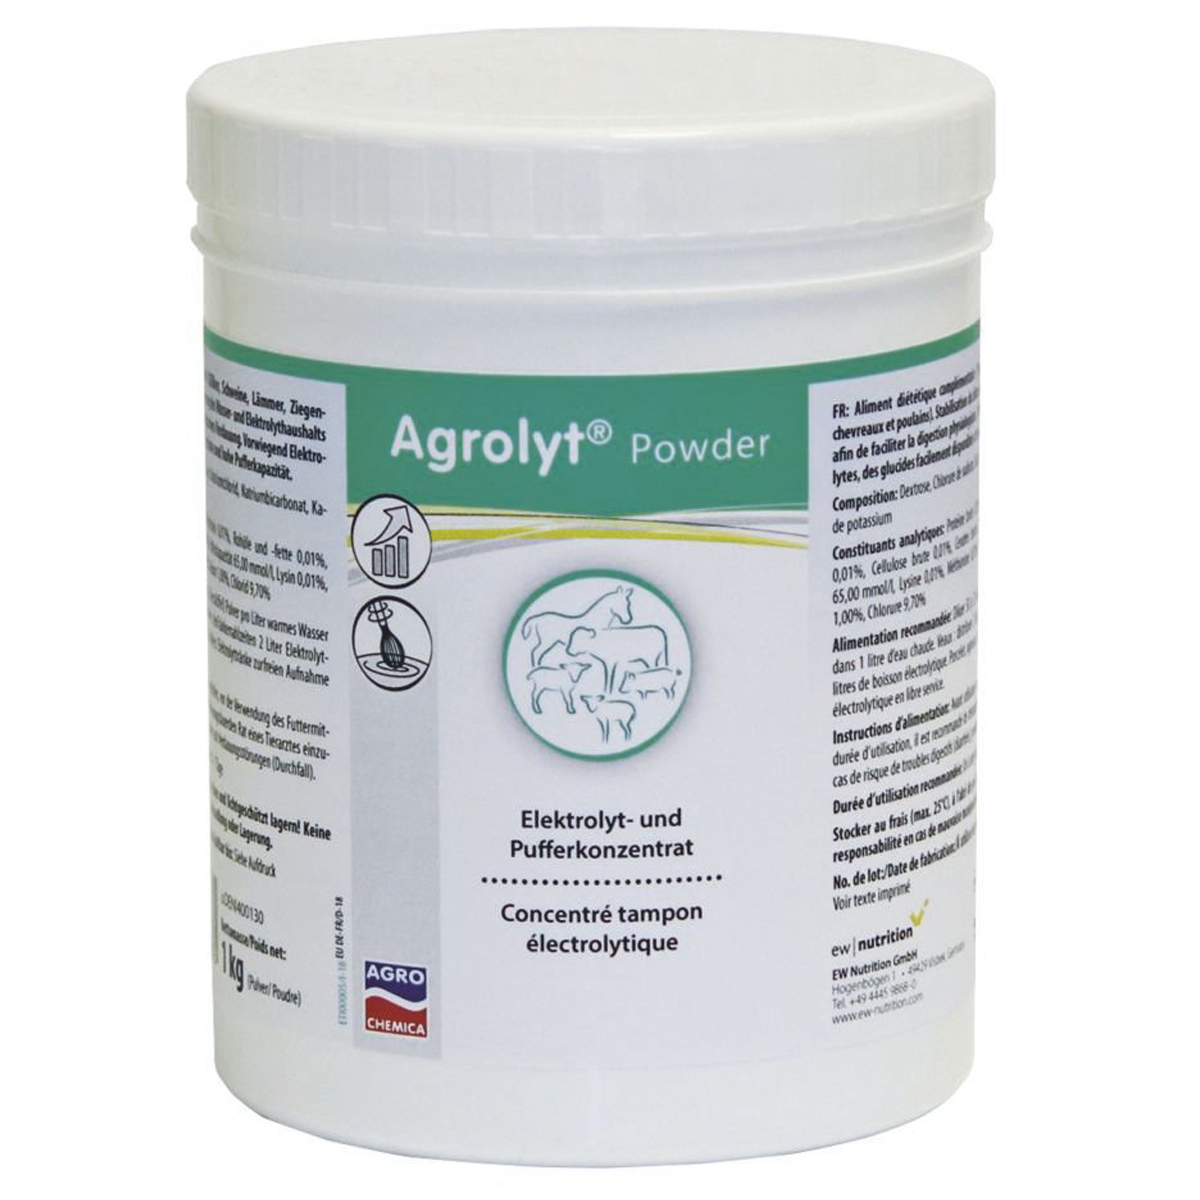 Agrolyt powder 1 kg